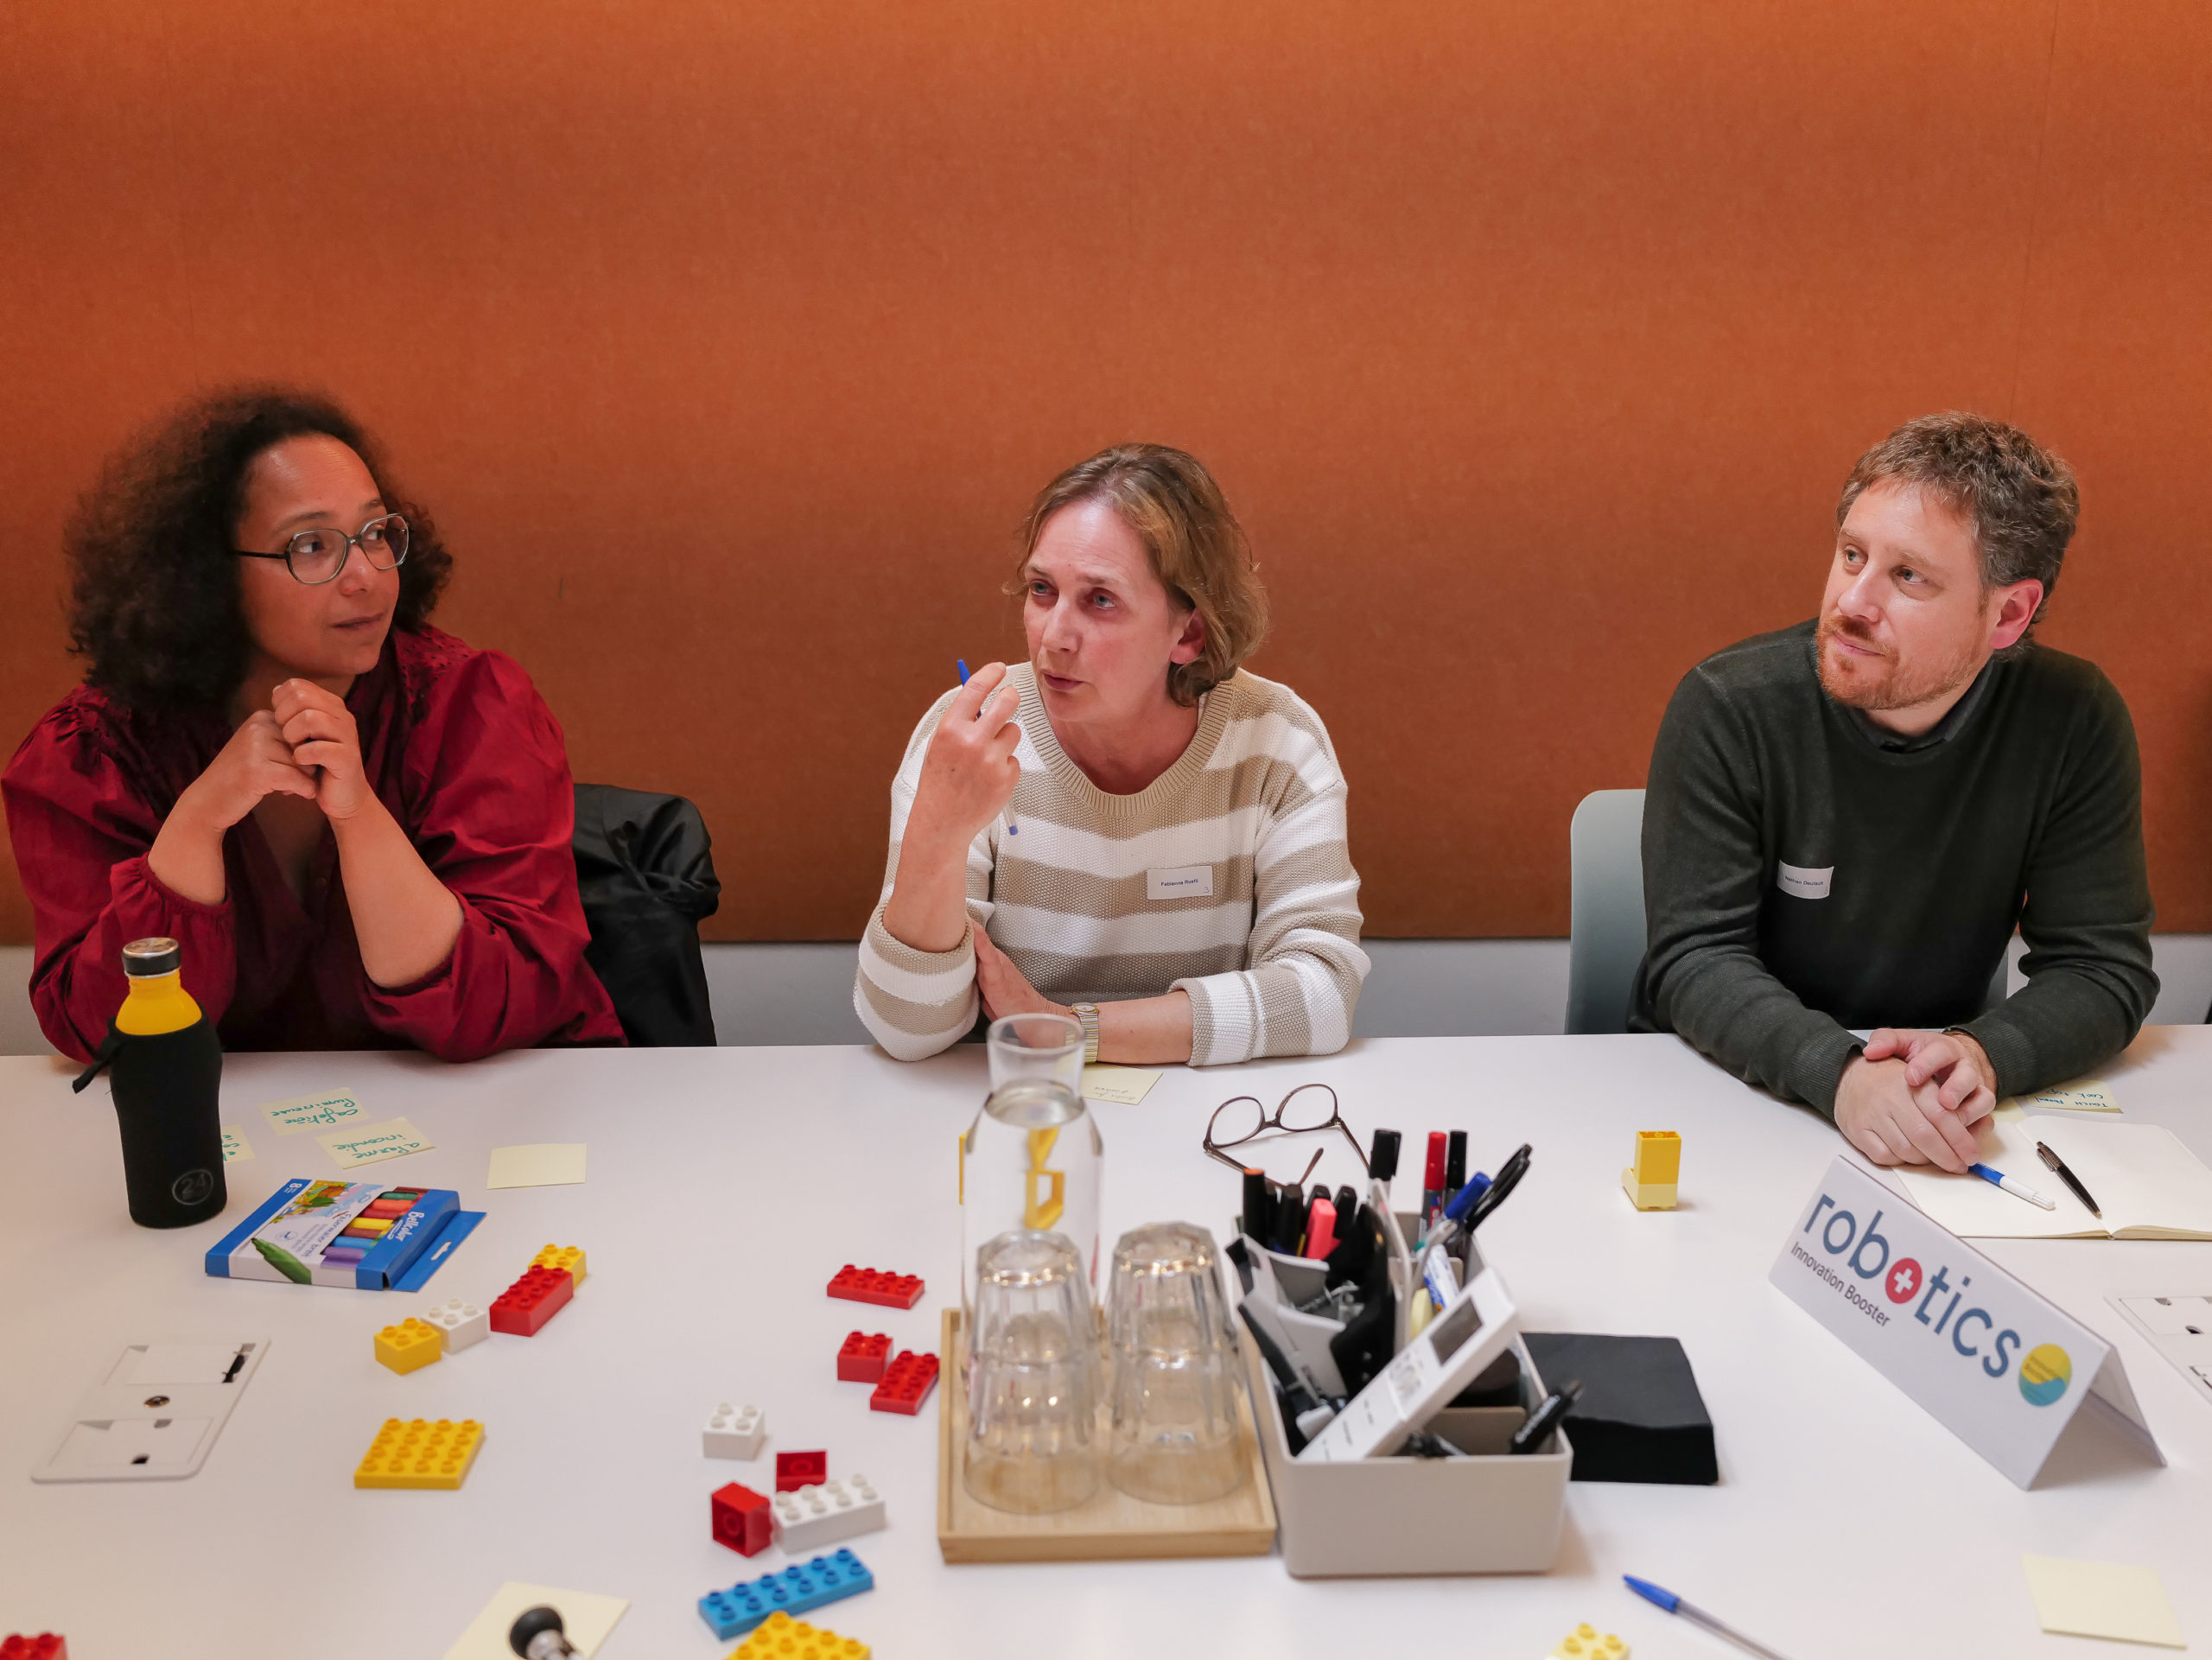 Zwei Teilnehmer/innen hören einer dritten Teilnehmerin zu, die während des Ideenfindungsworkshops spricht.